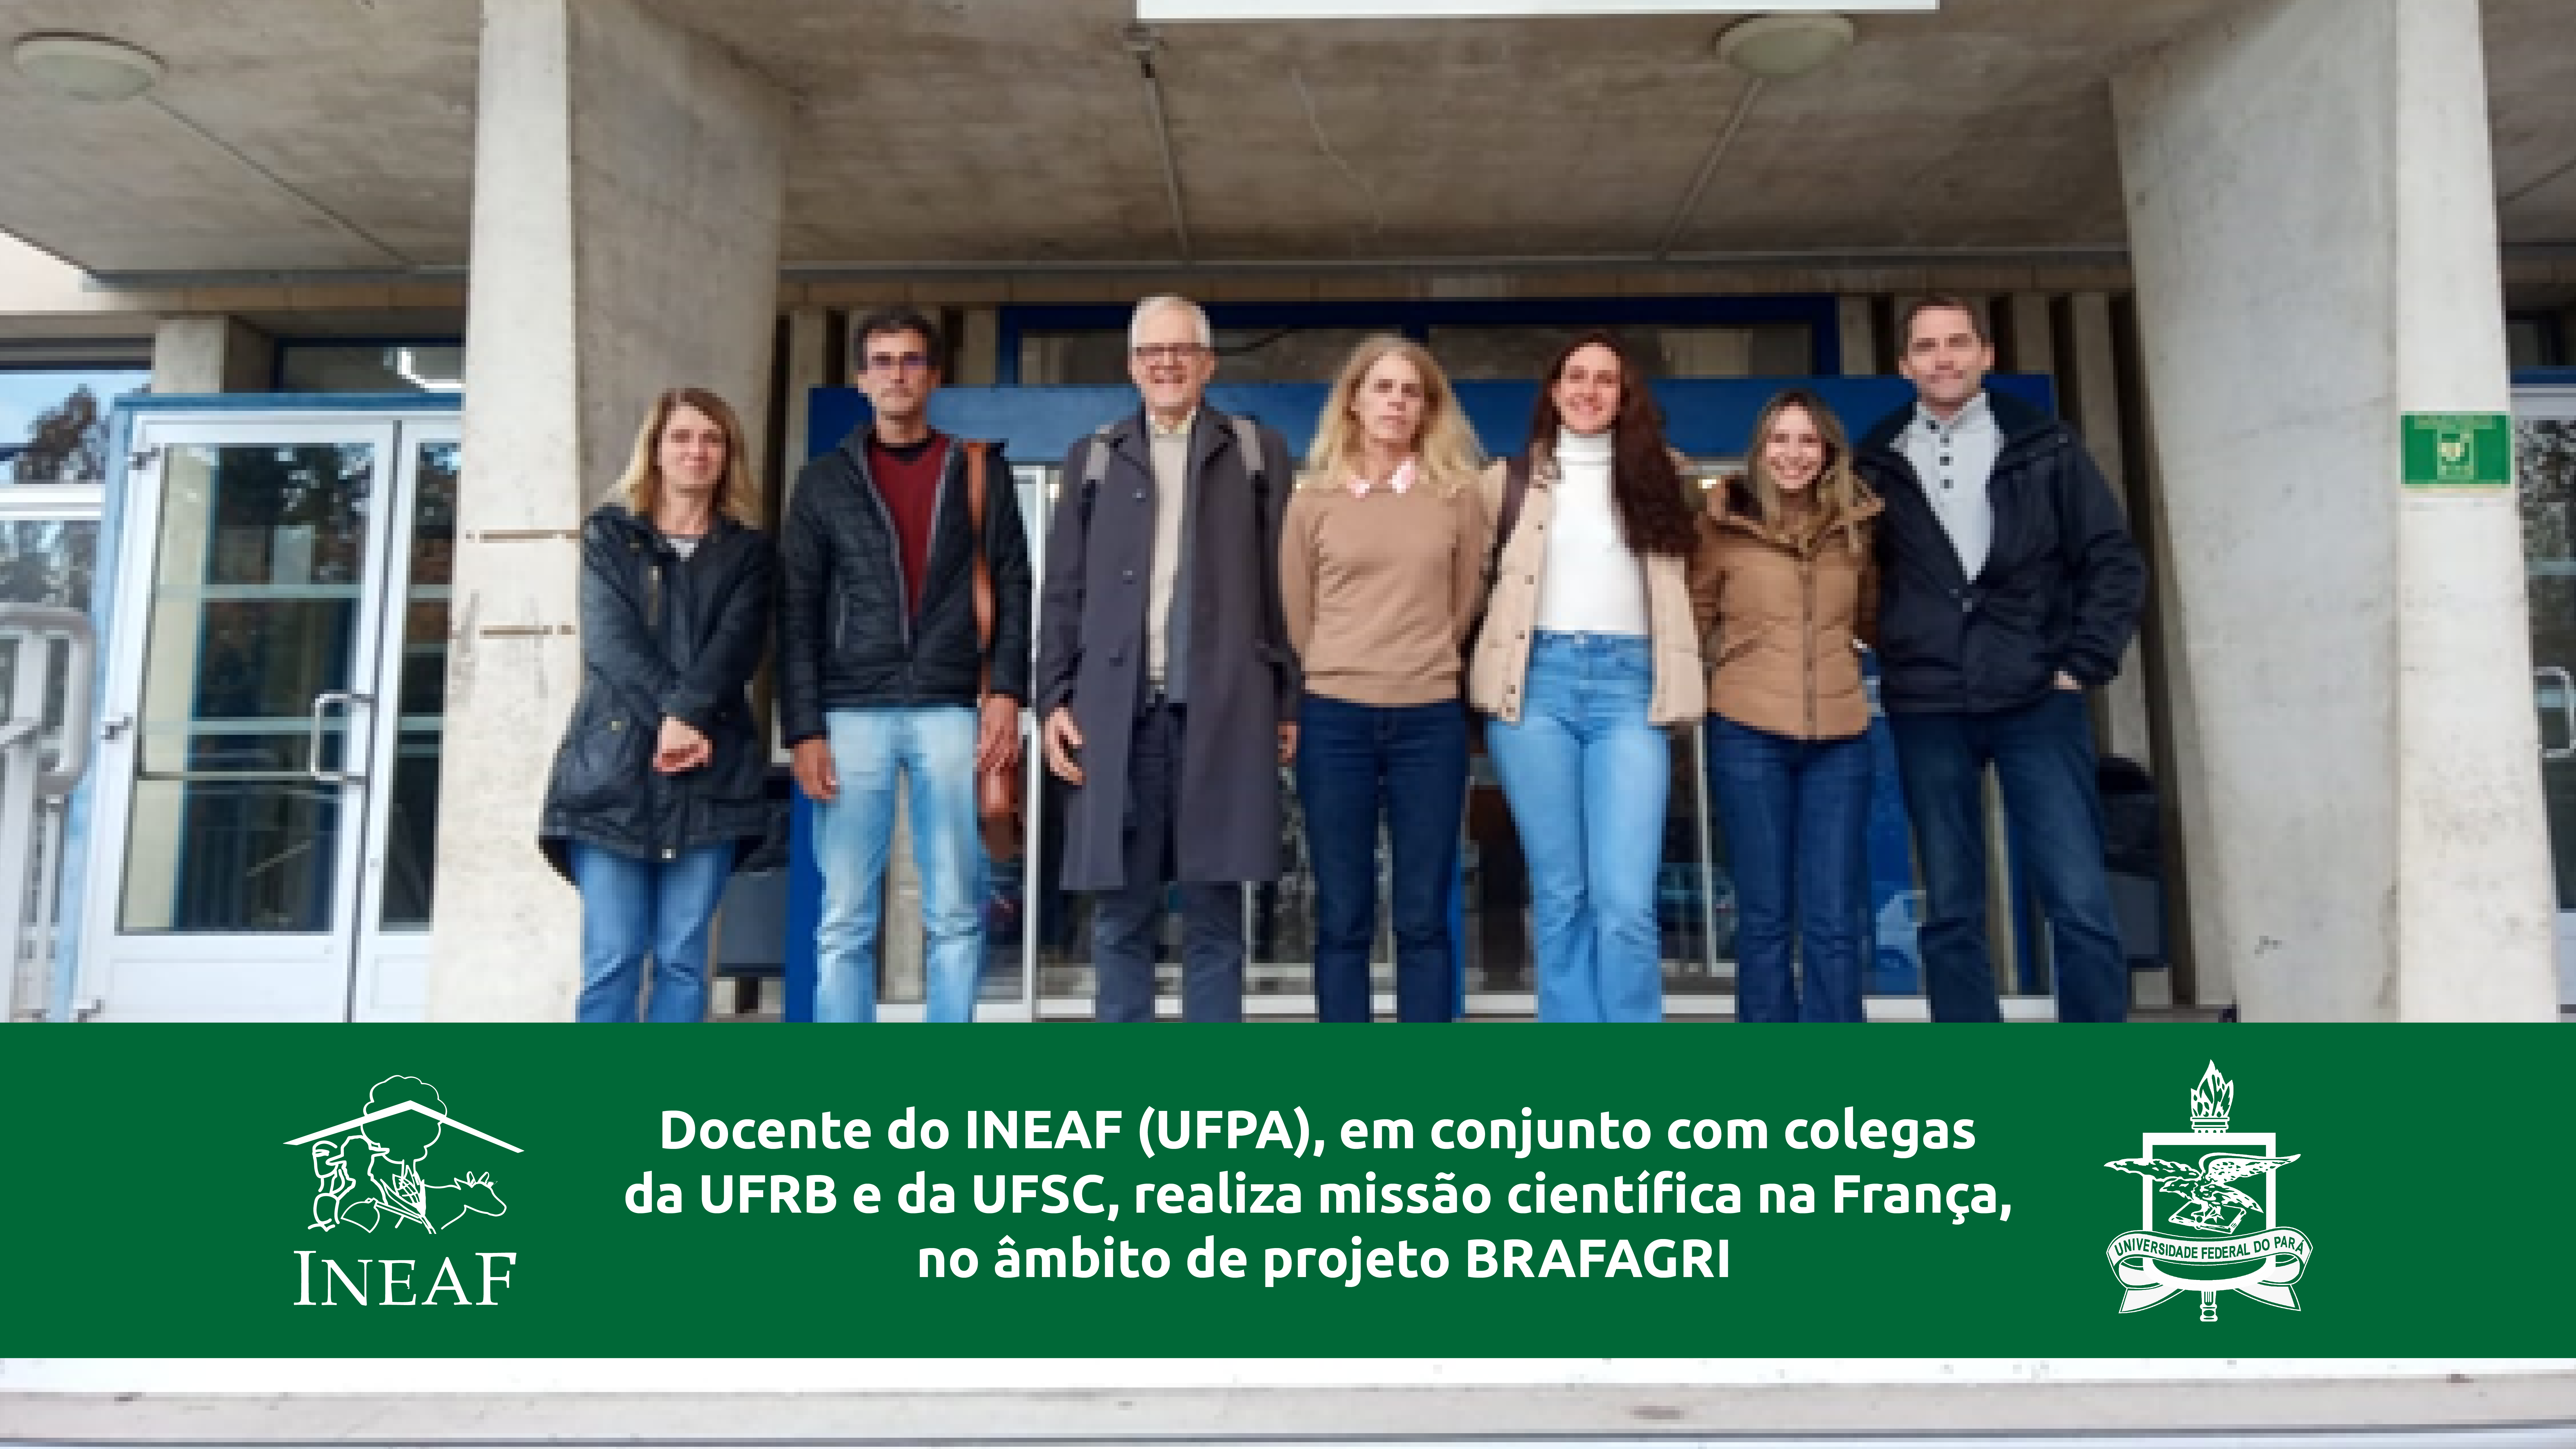 Docente do INEAF (UFPA), em conjunto com colegas da UFRB e da UFSC, realiza missão científica na França, no âmbito de projeto BRAFAGRI